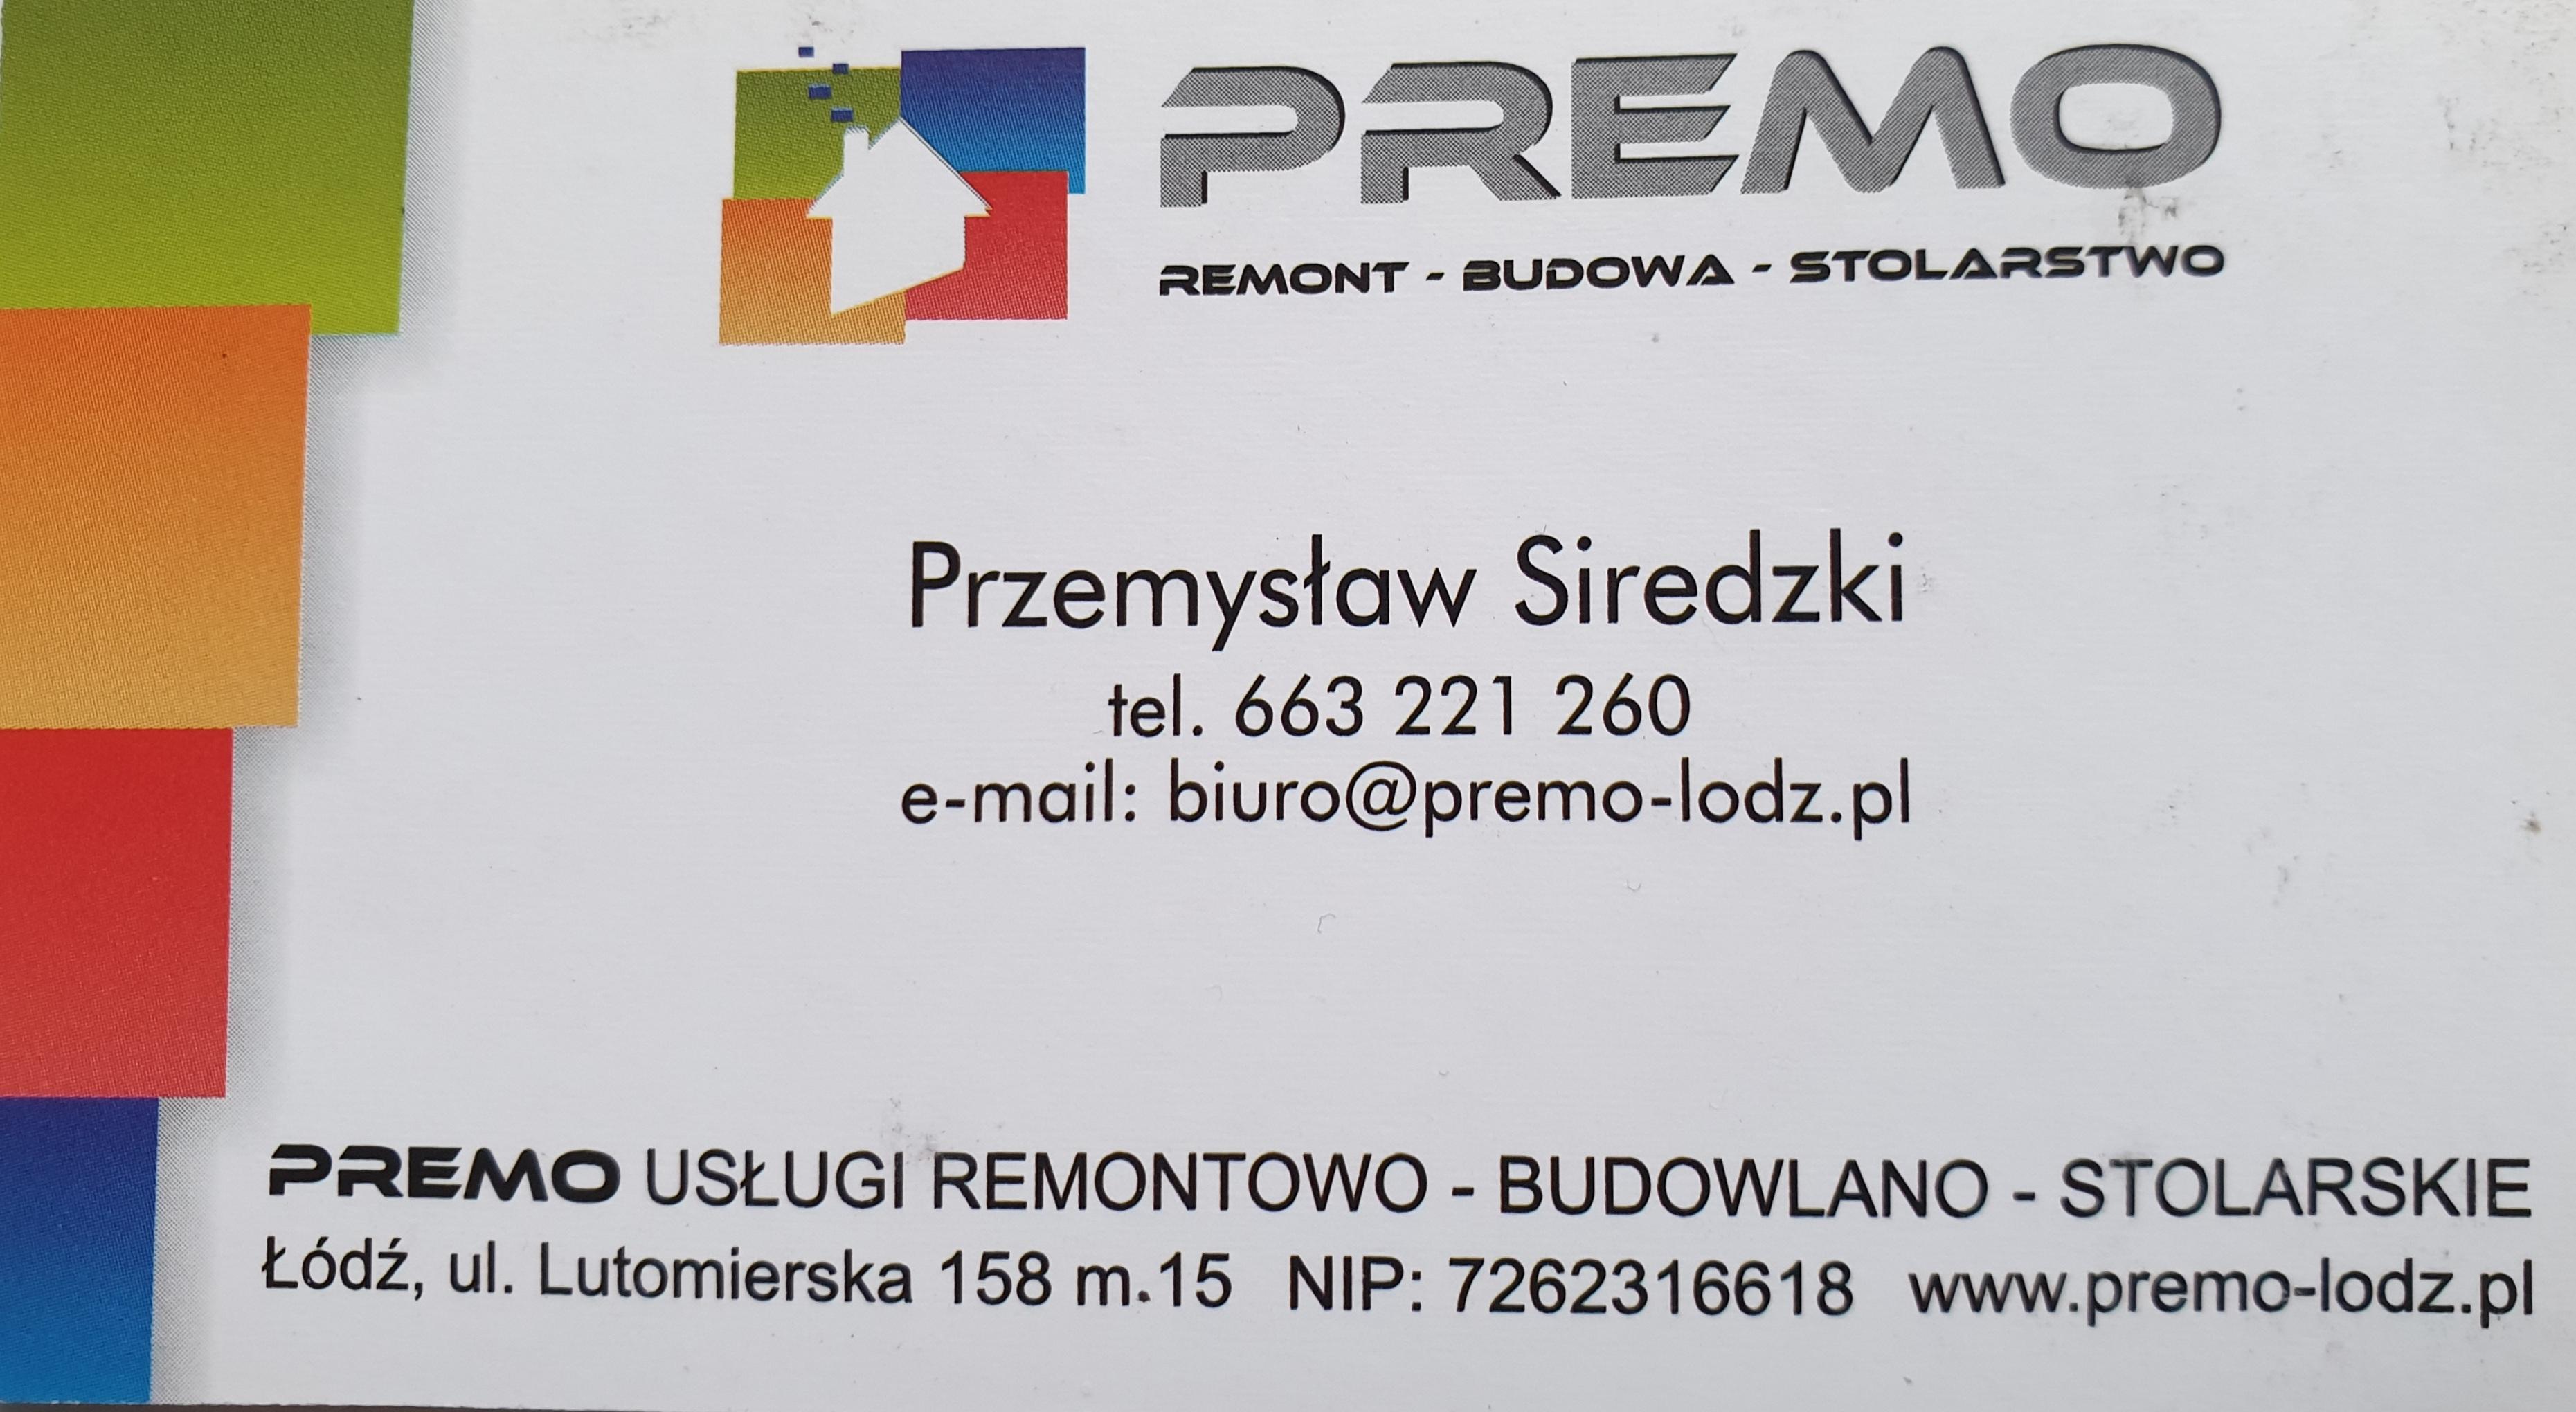 "PREMO" FIRMA REMONTOWO-BUDOWLANA PRZEMYSŁAW SIREDZKI-logo